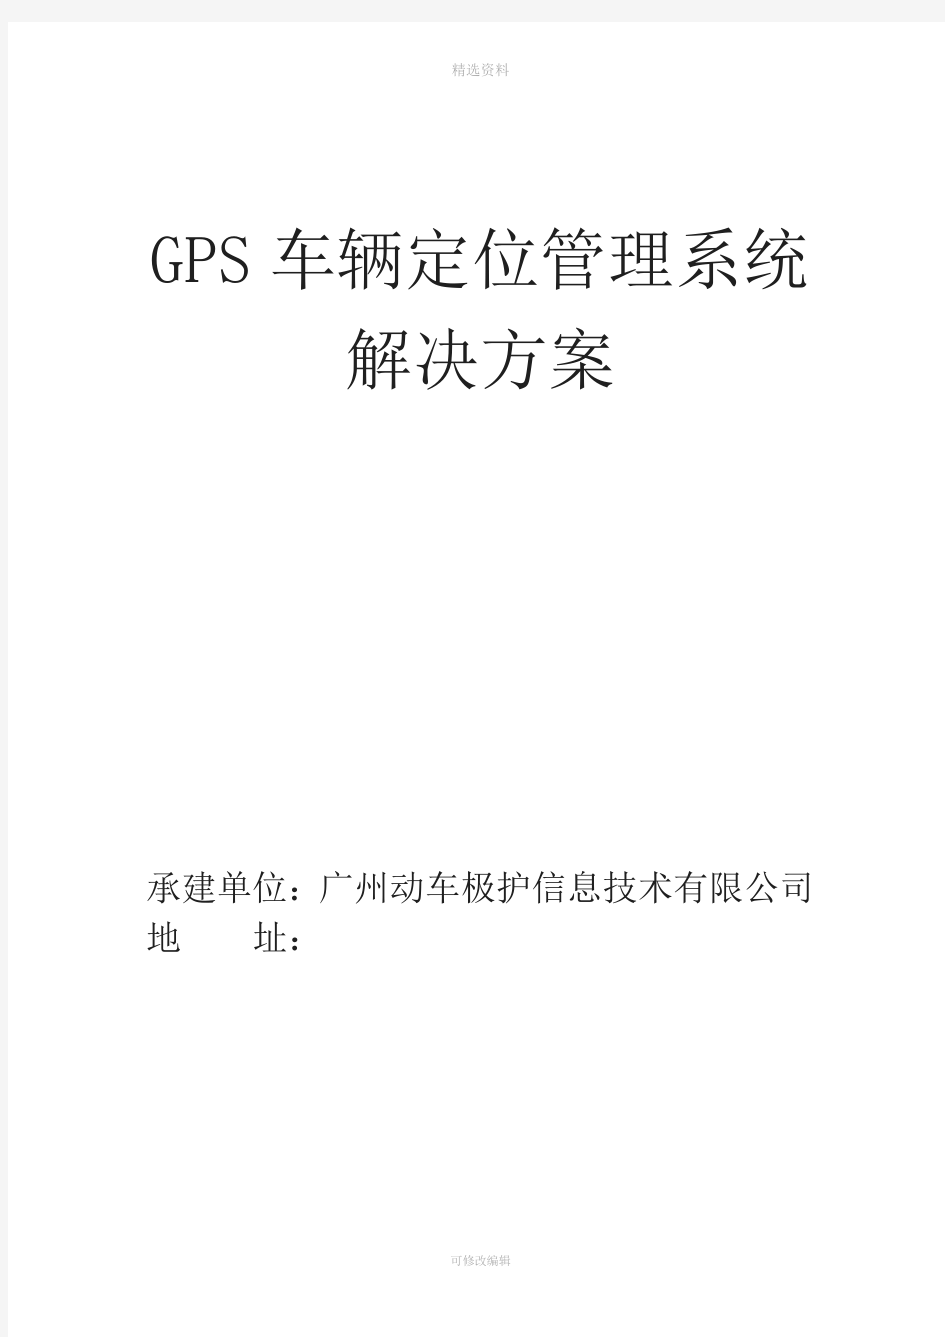 GS车辆定位管理系统解决方案